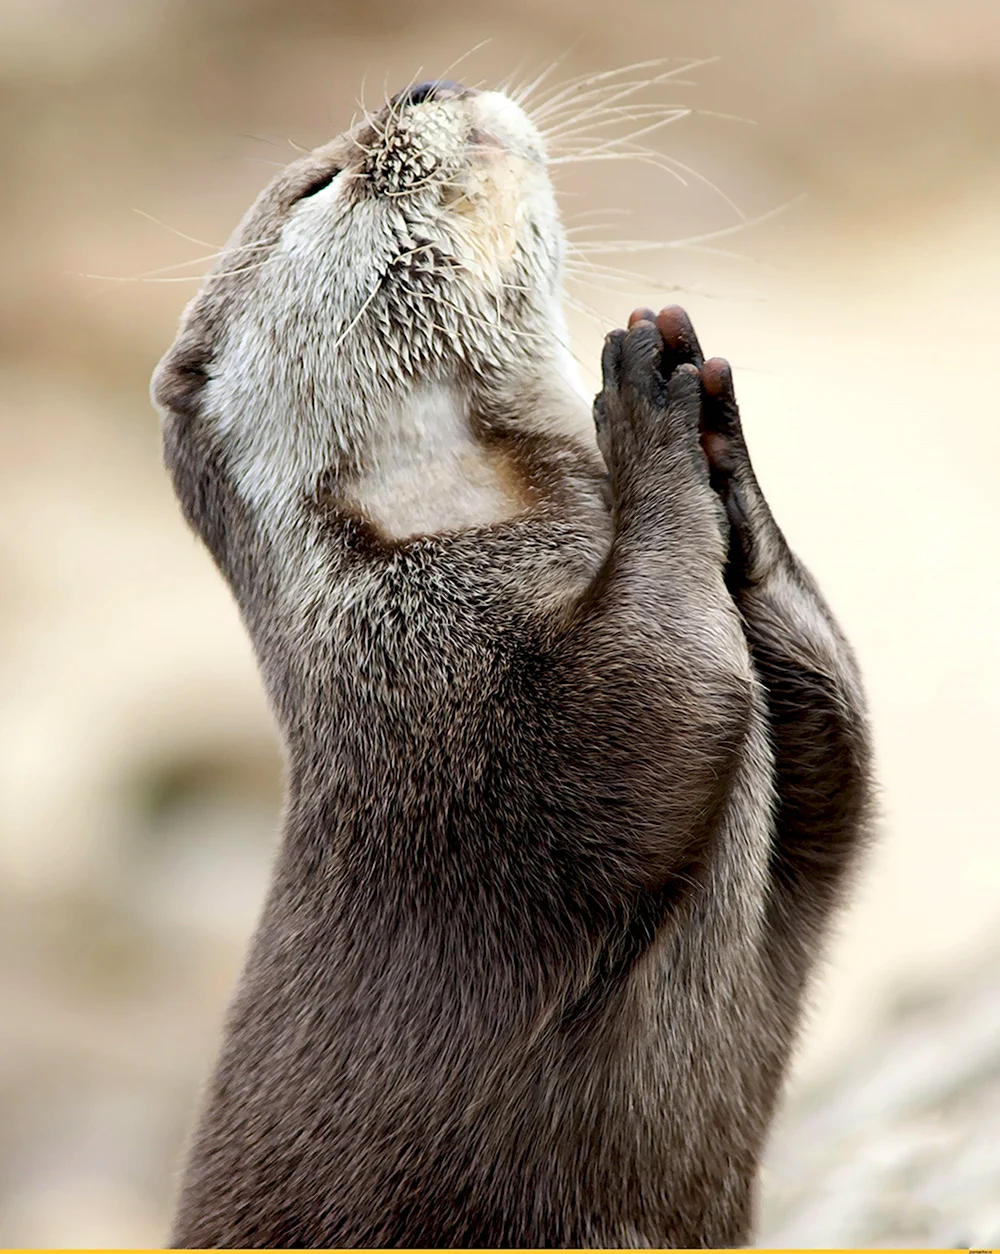 Суслик молится